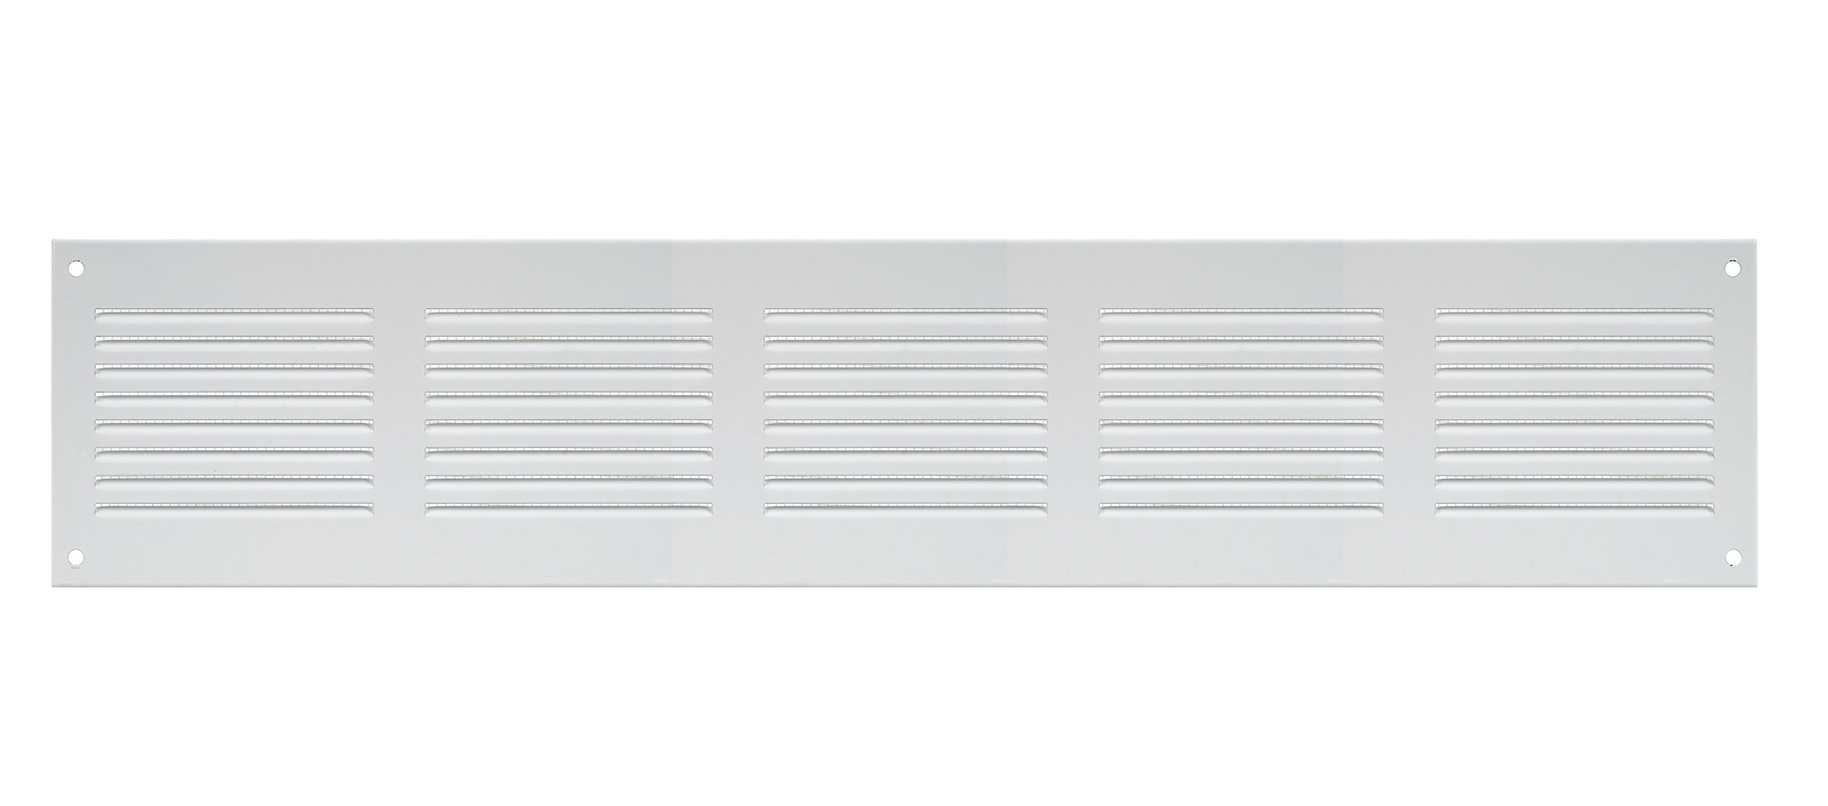 Решетка радиаторная Europlast MR5010 белая алюминиевая решетка vr1515 europlast 06 0641 303